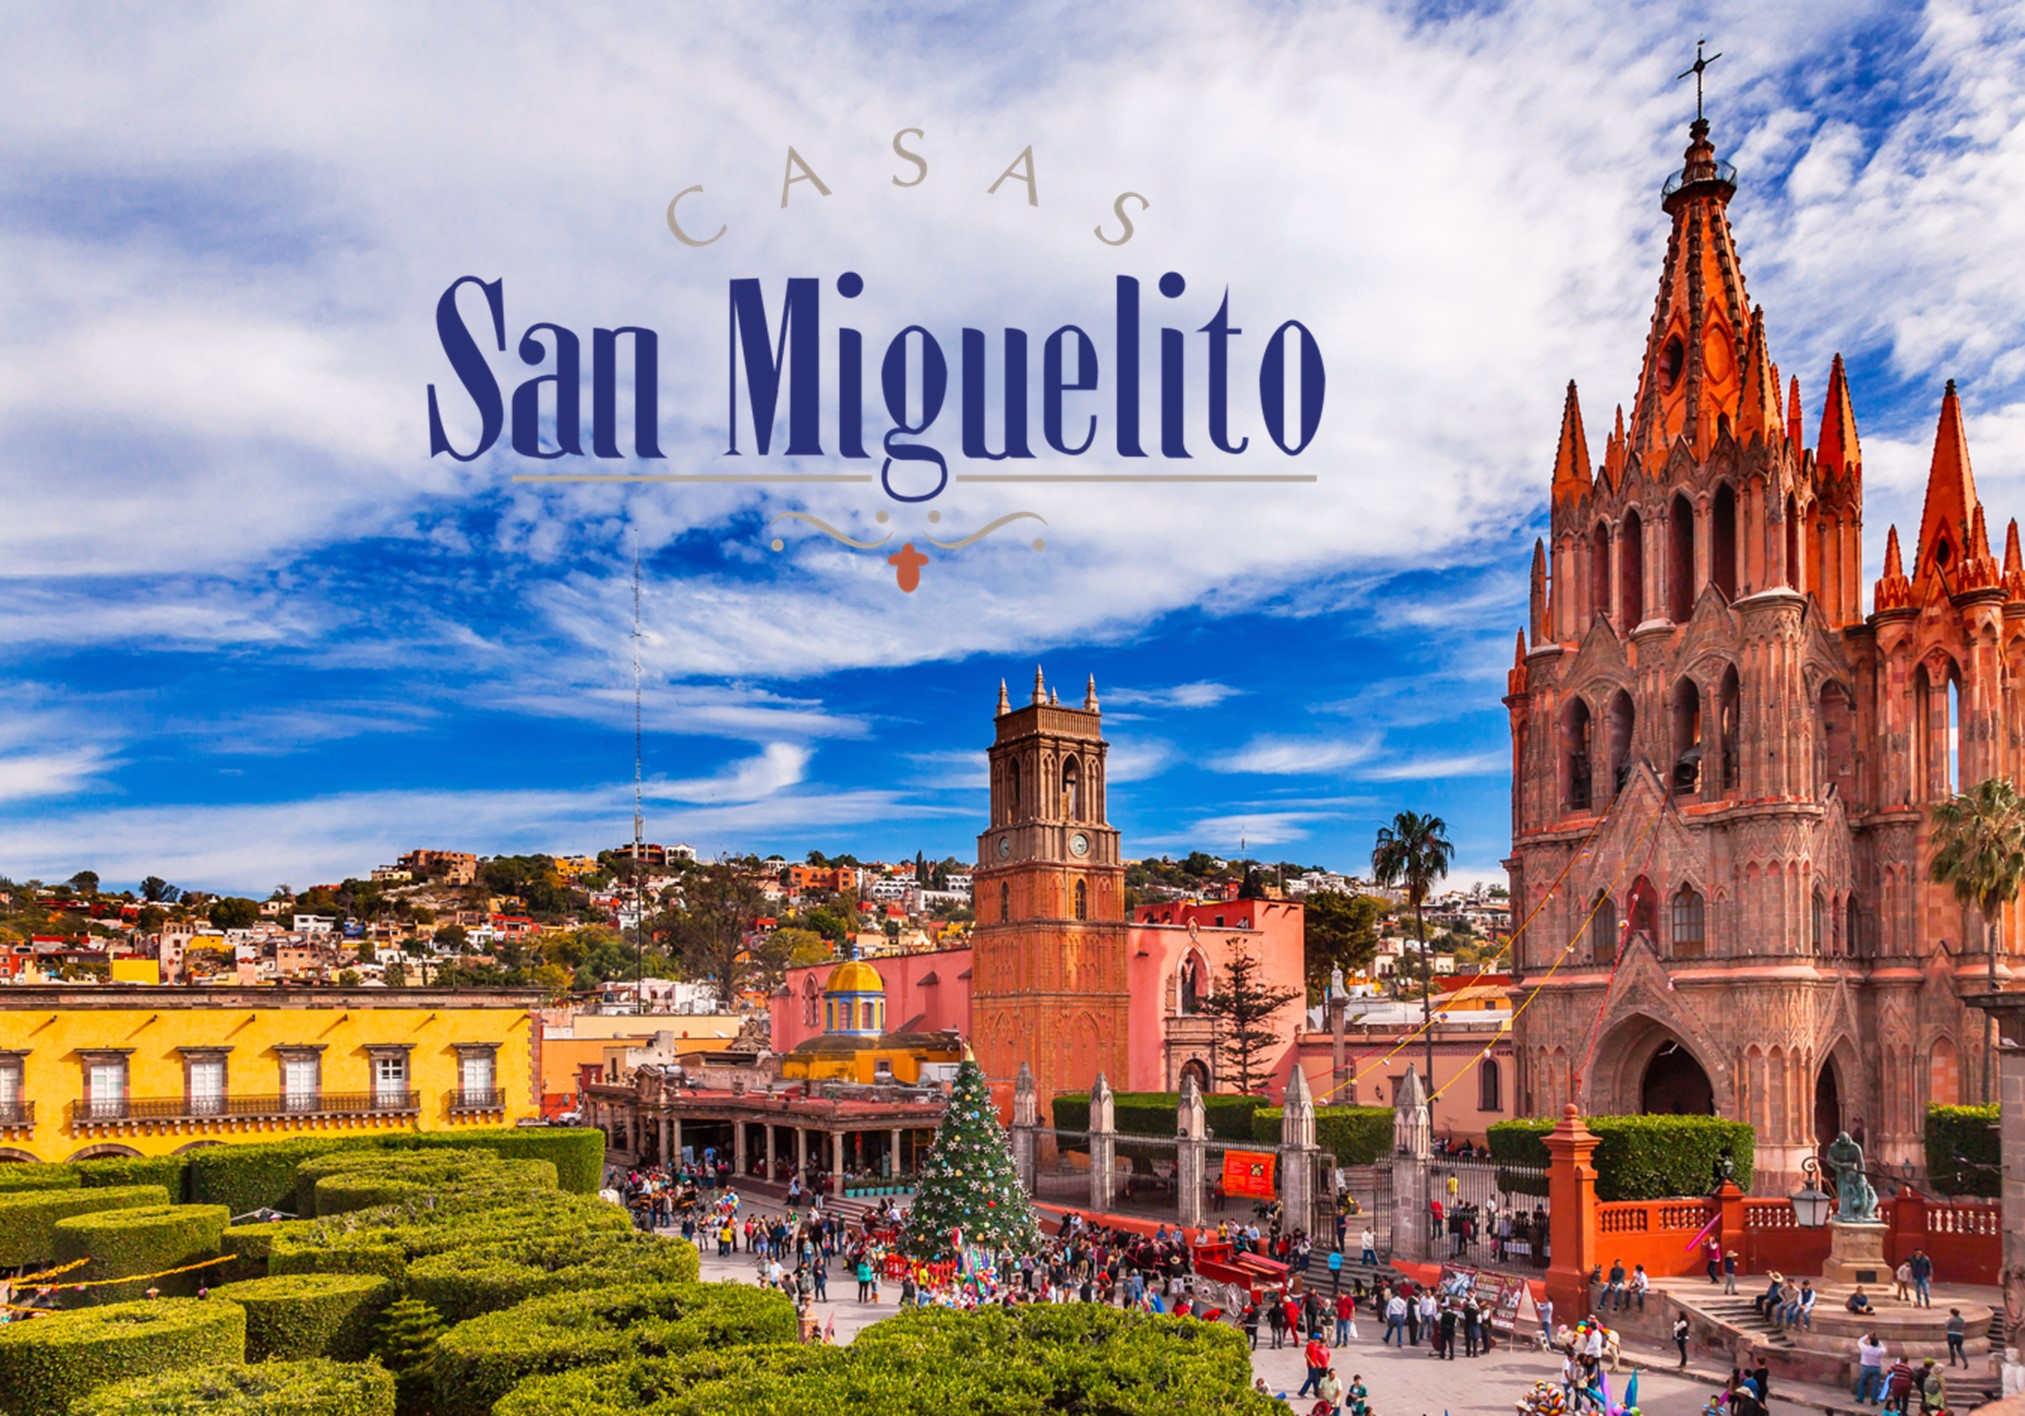 Casas San Miguelito: empresa comprometida con los sanmiguelenses